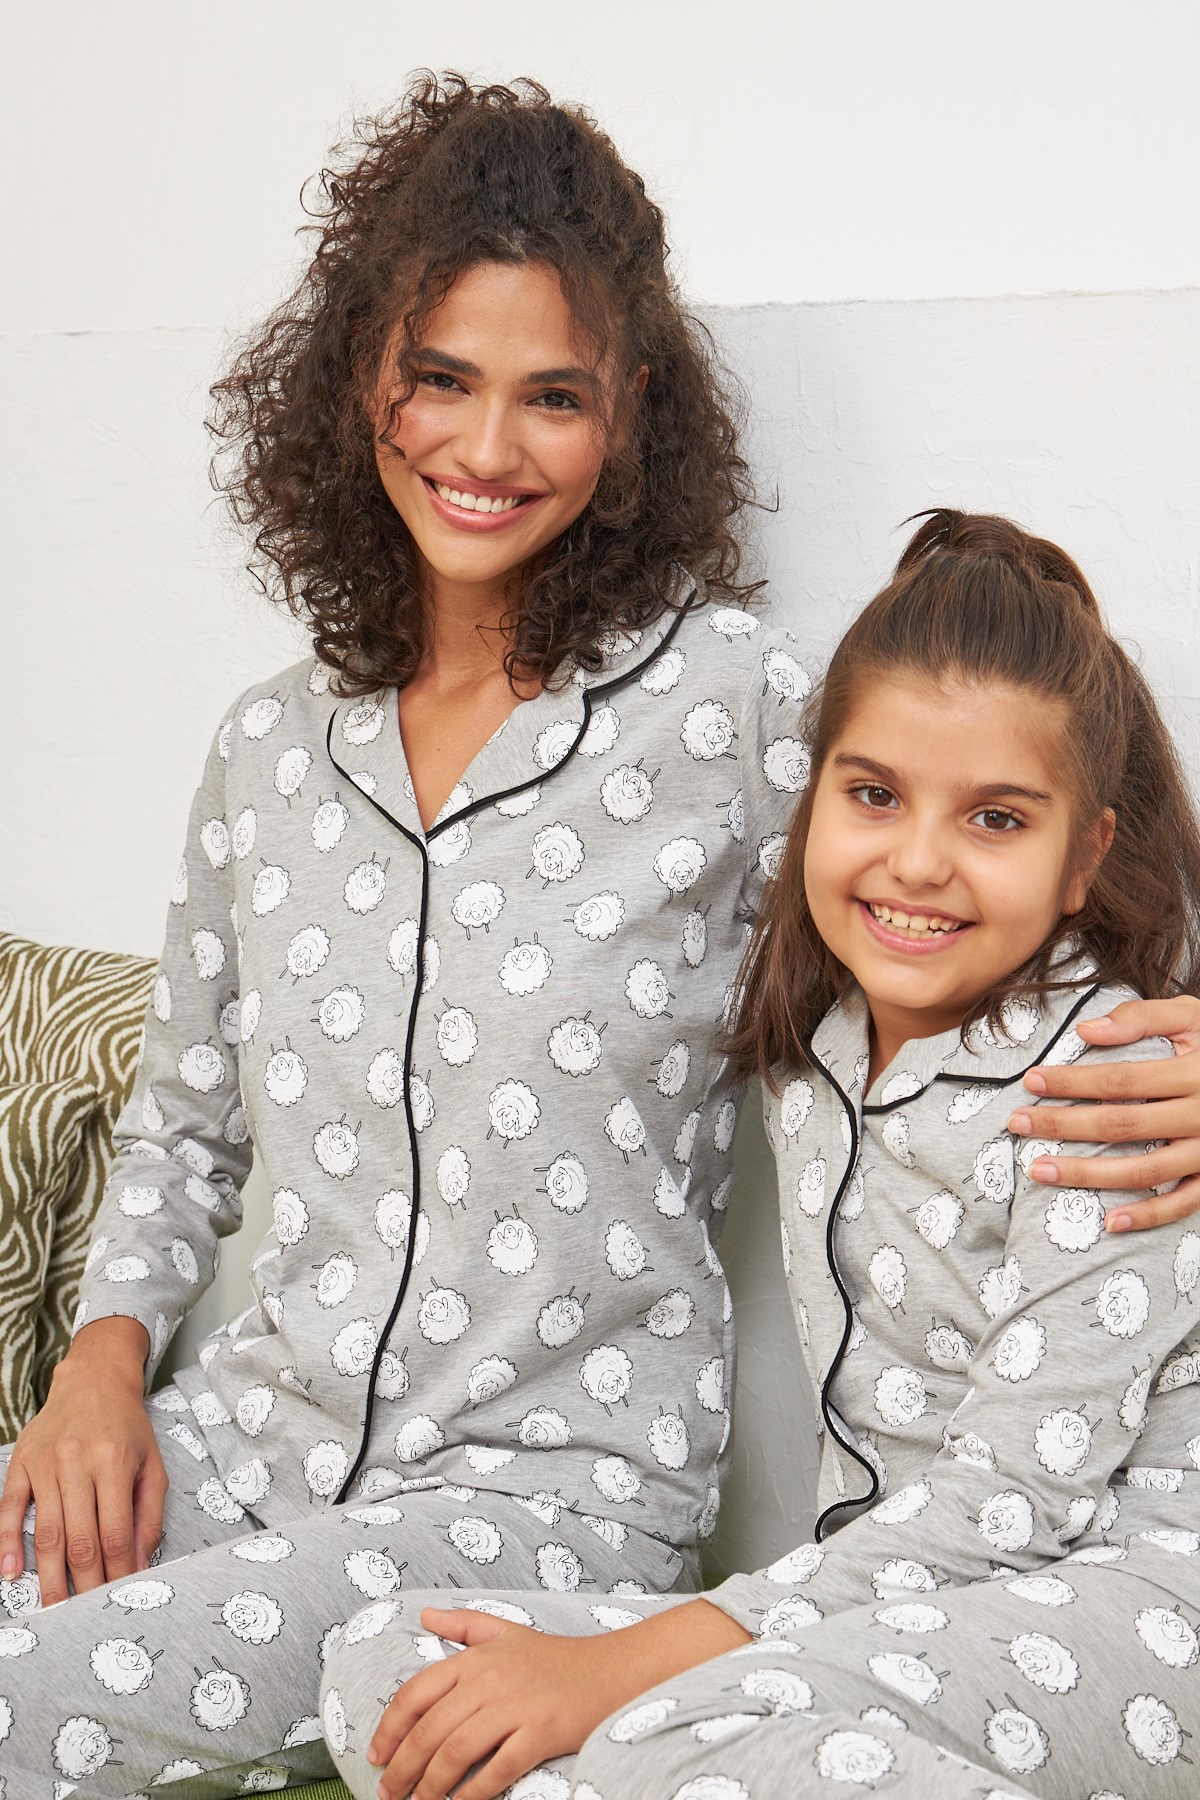 Lovely sheep Pijama Takımı Anne Kız Ayrı Ayrı Satılır Fıyatları Farklıdır